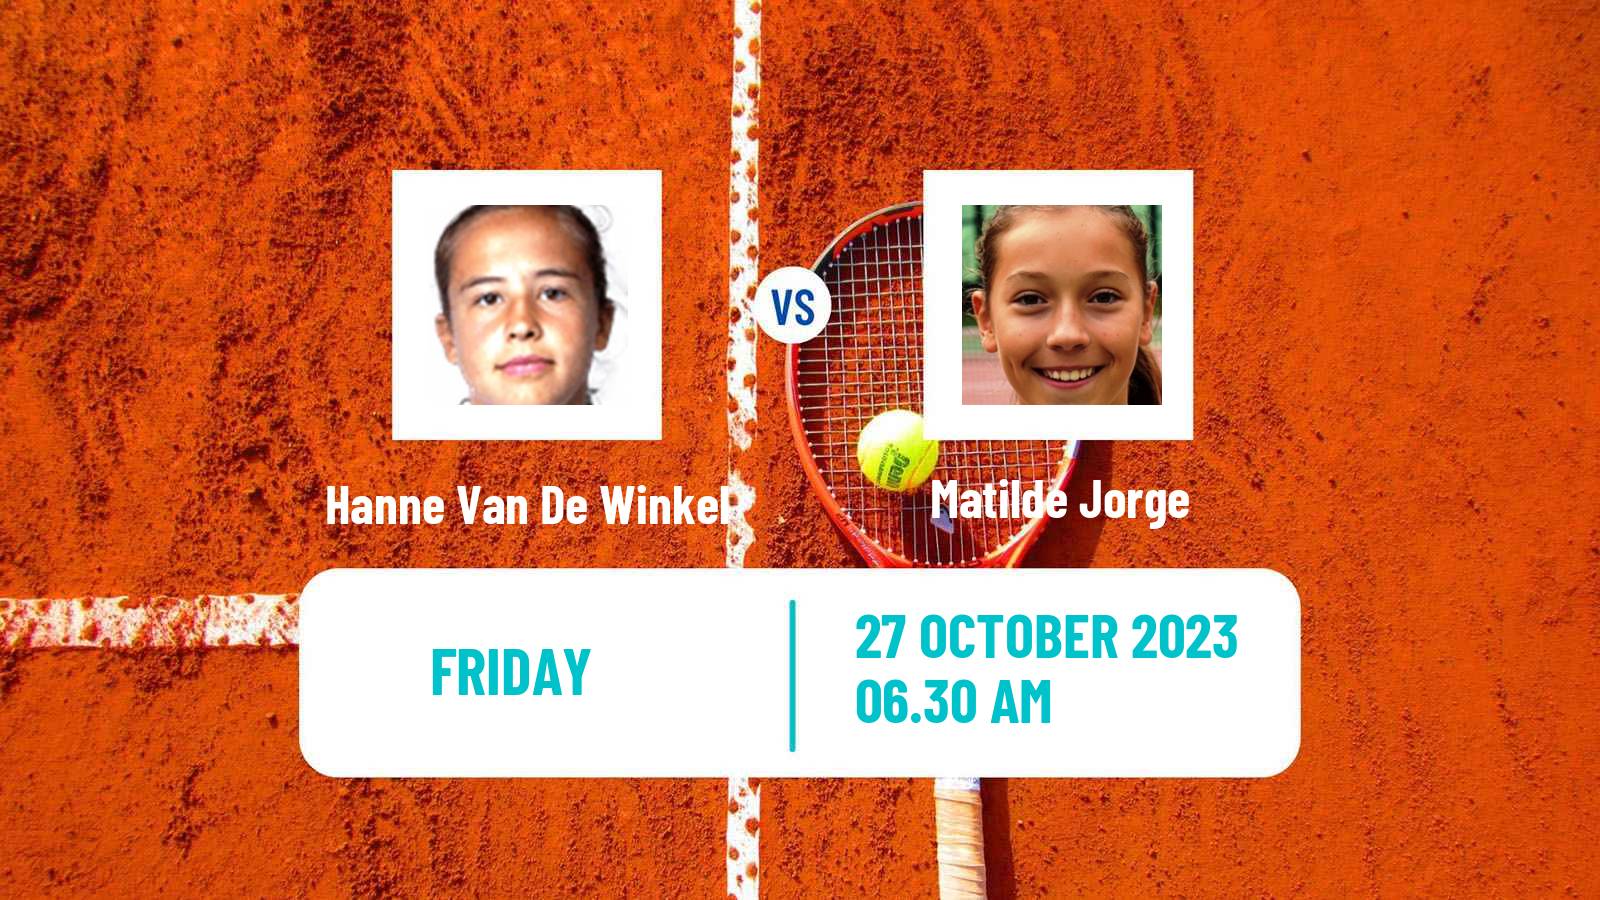 Tennis ITF W25 Loule Women Hanne Van De Winkel - Matilde Jorge